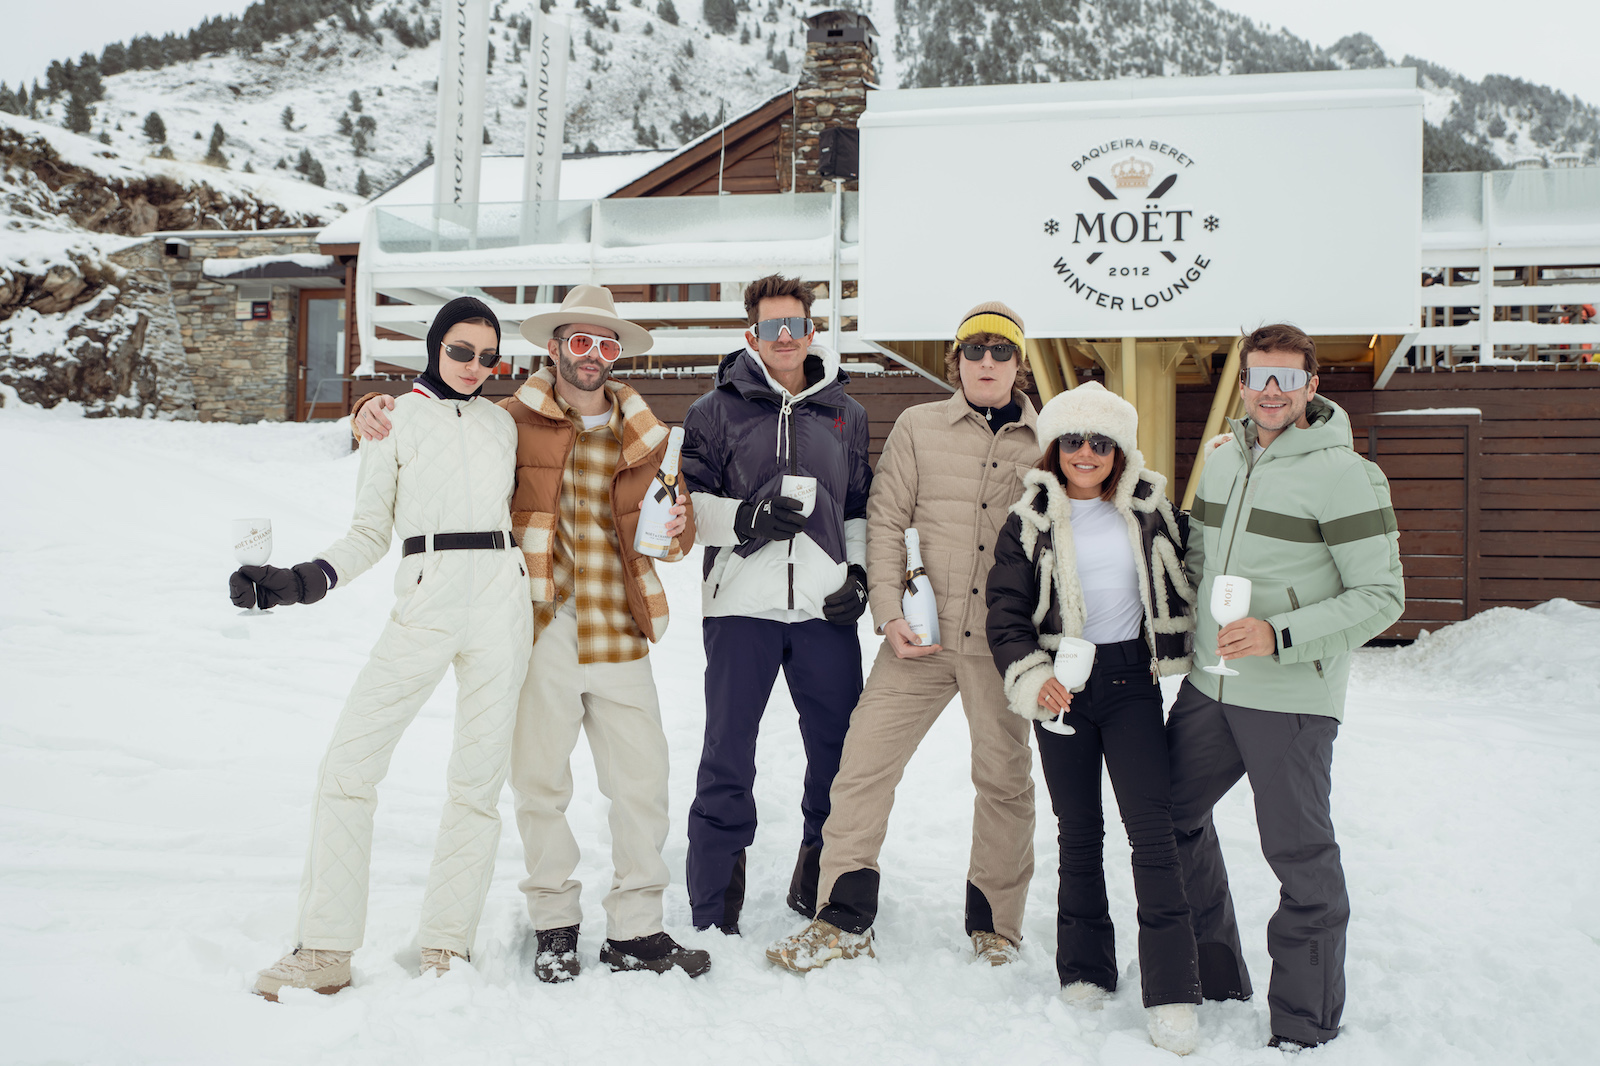 imagen 4 de Möet Winter Lounge: esquí, Navidad y lujo en Baqueira-Beret.